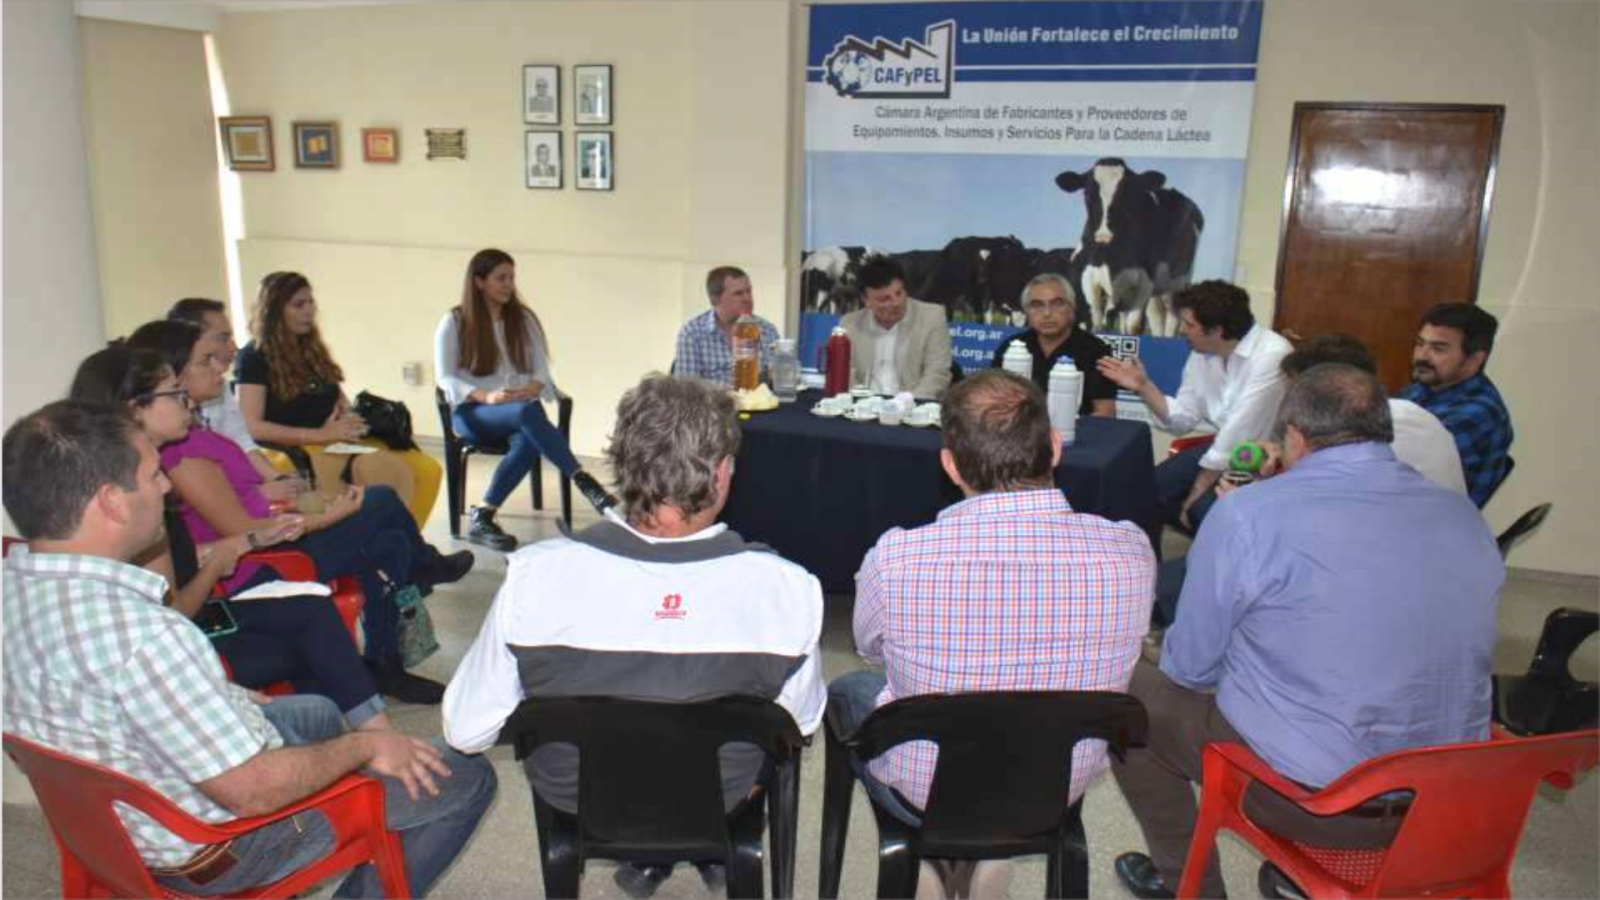 Visita de contigente de Ecuador a la CAFyPEL